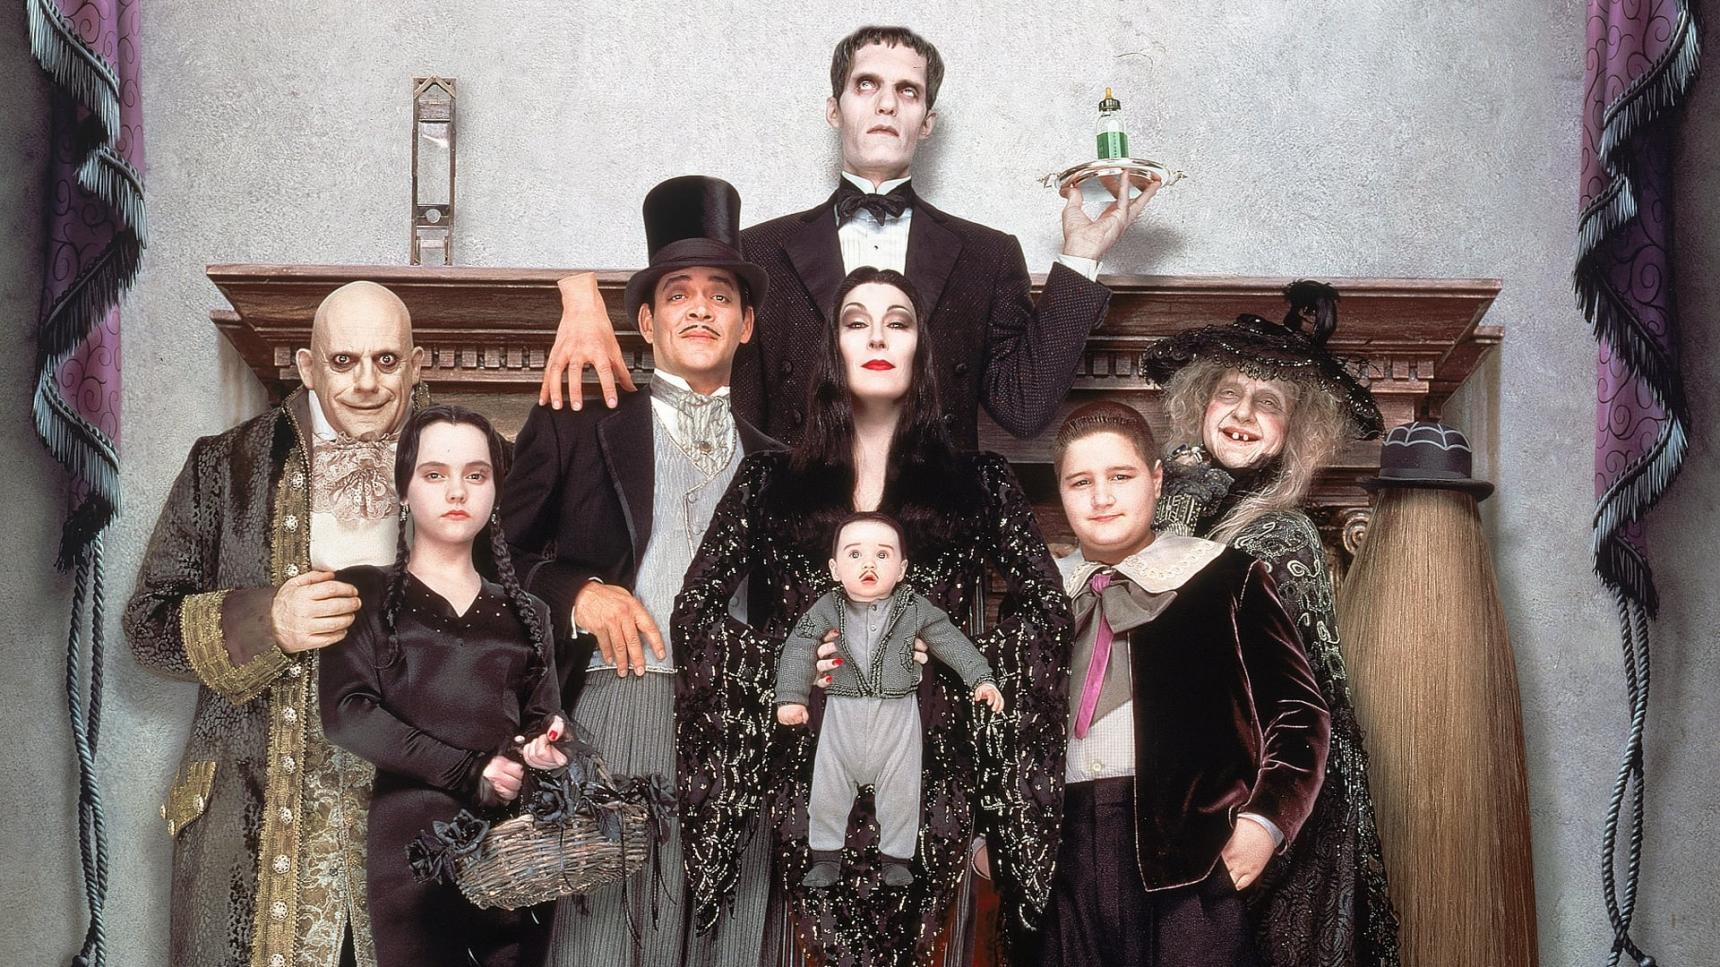 Fondo de pantalla de la película Addams Family Values en Cliver.tv gratis